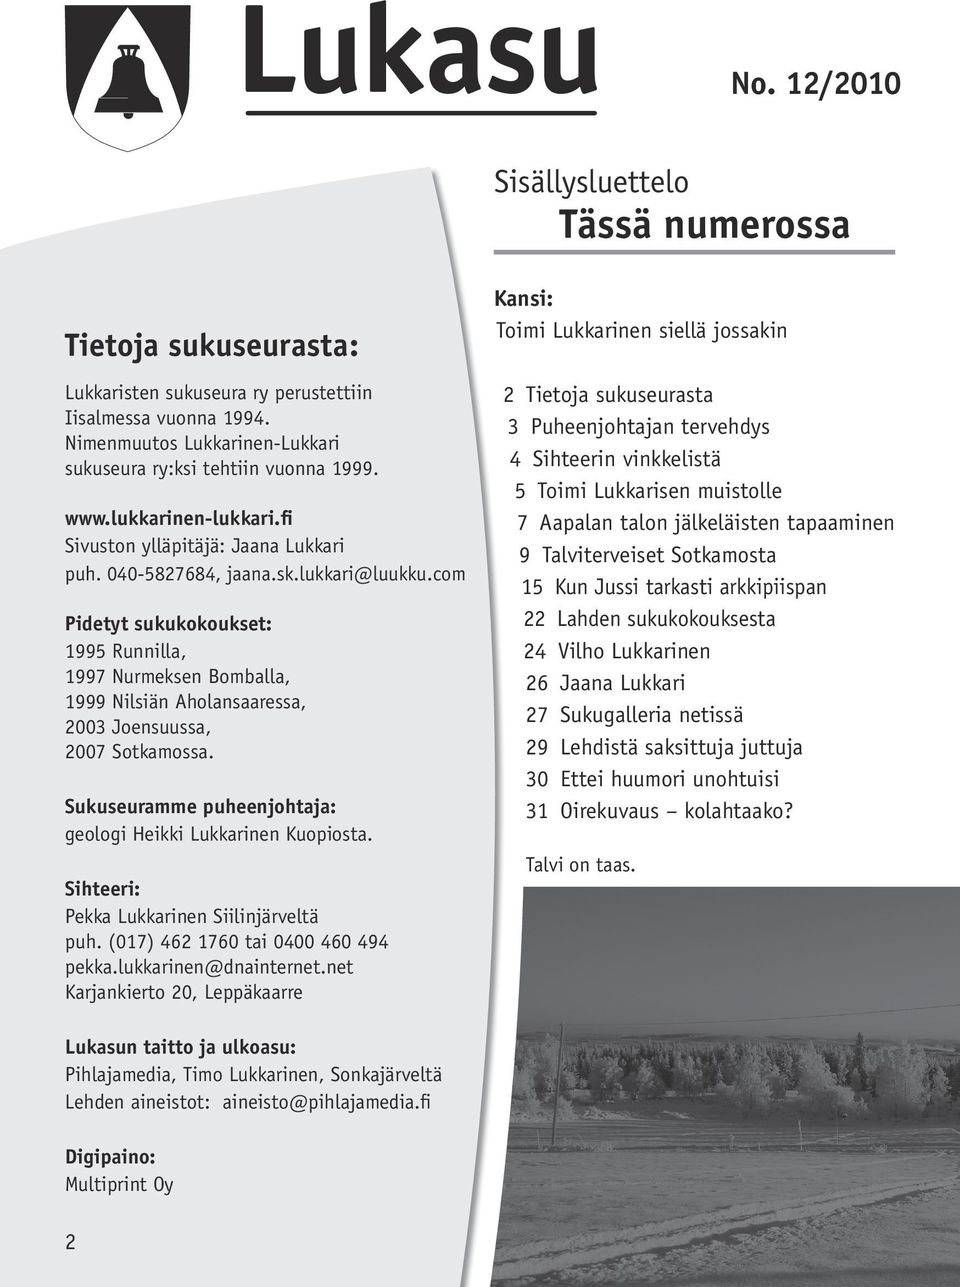 com Pidetyt sukukokoukset: 1995 Runnilla, 1997 Nurmeksen Bomballa, 1999 Nilsiän Aholansaaressa, 2003 Joensuussa, 2007 Sotkamossa. Sukuseuramme puheenjohtaja: geologi Heikki Lukkarinen Kuopiosta.